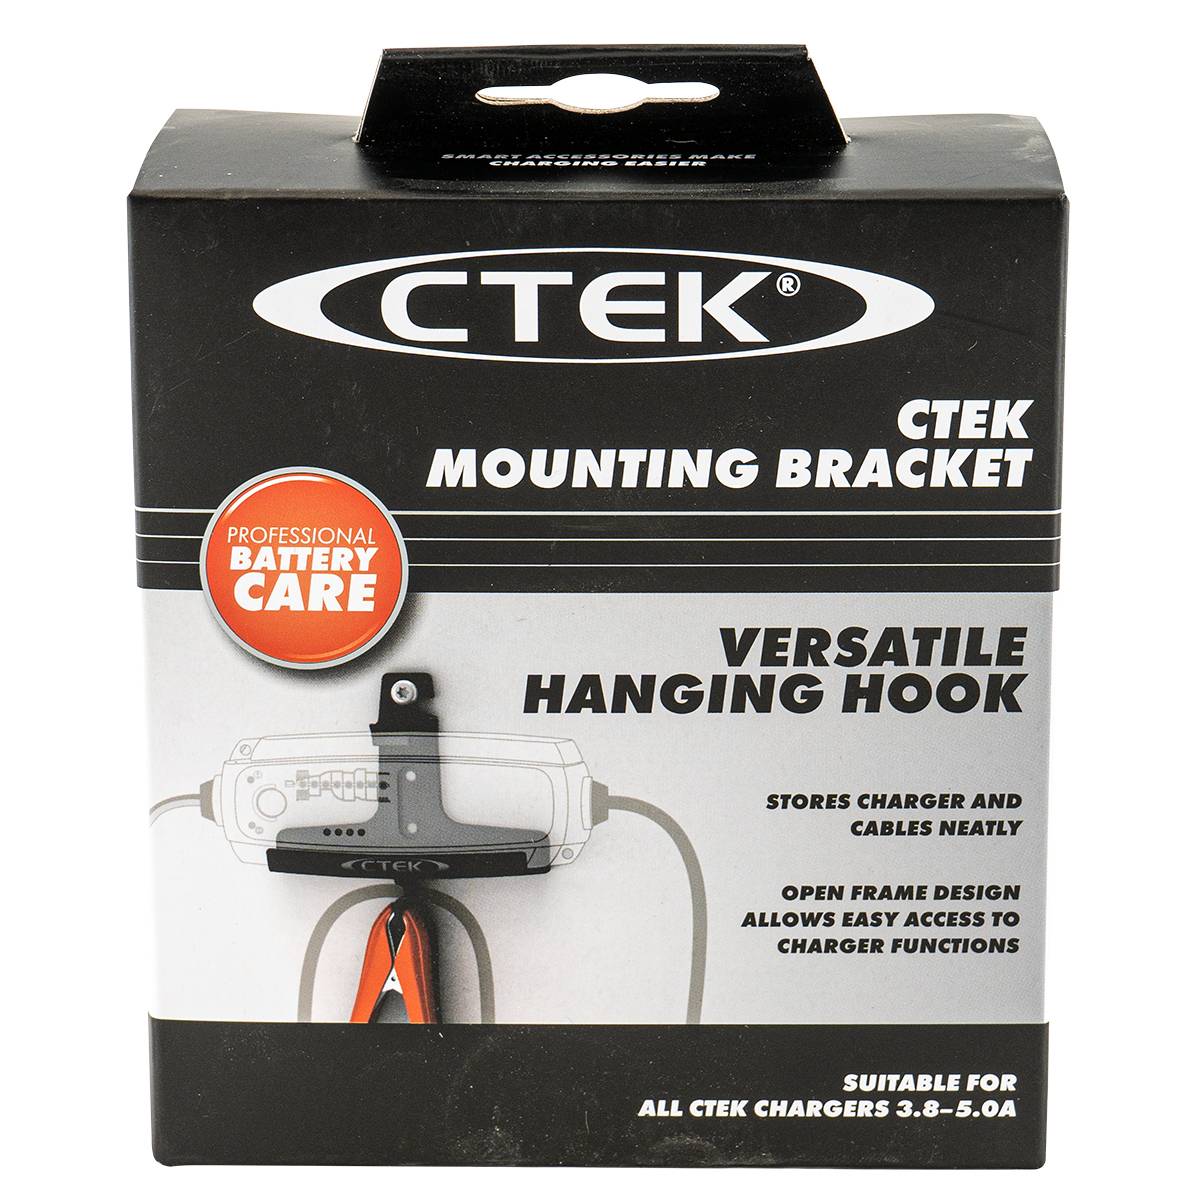 CTEK Mounting Bracket Universalhalter für Batterieladegeräte